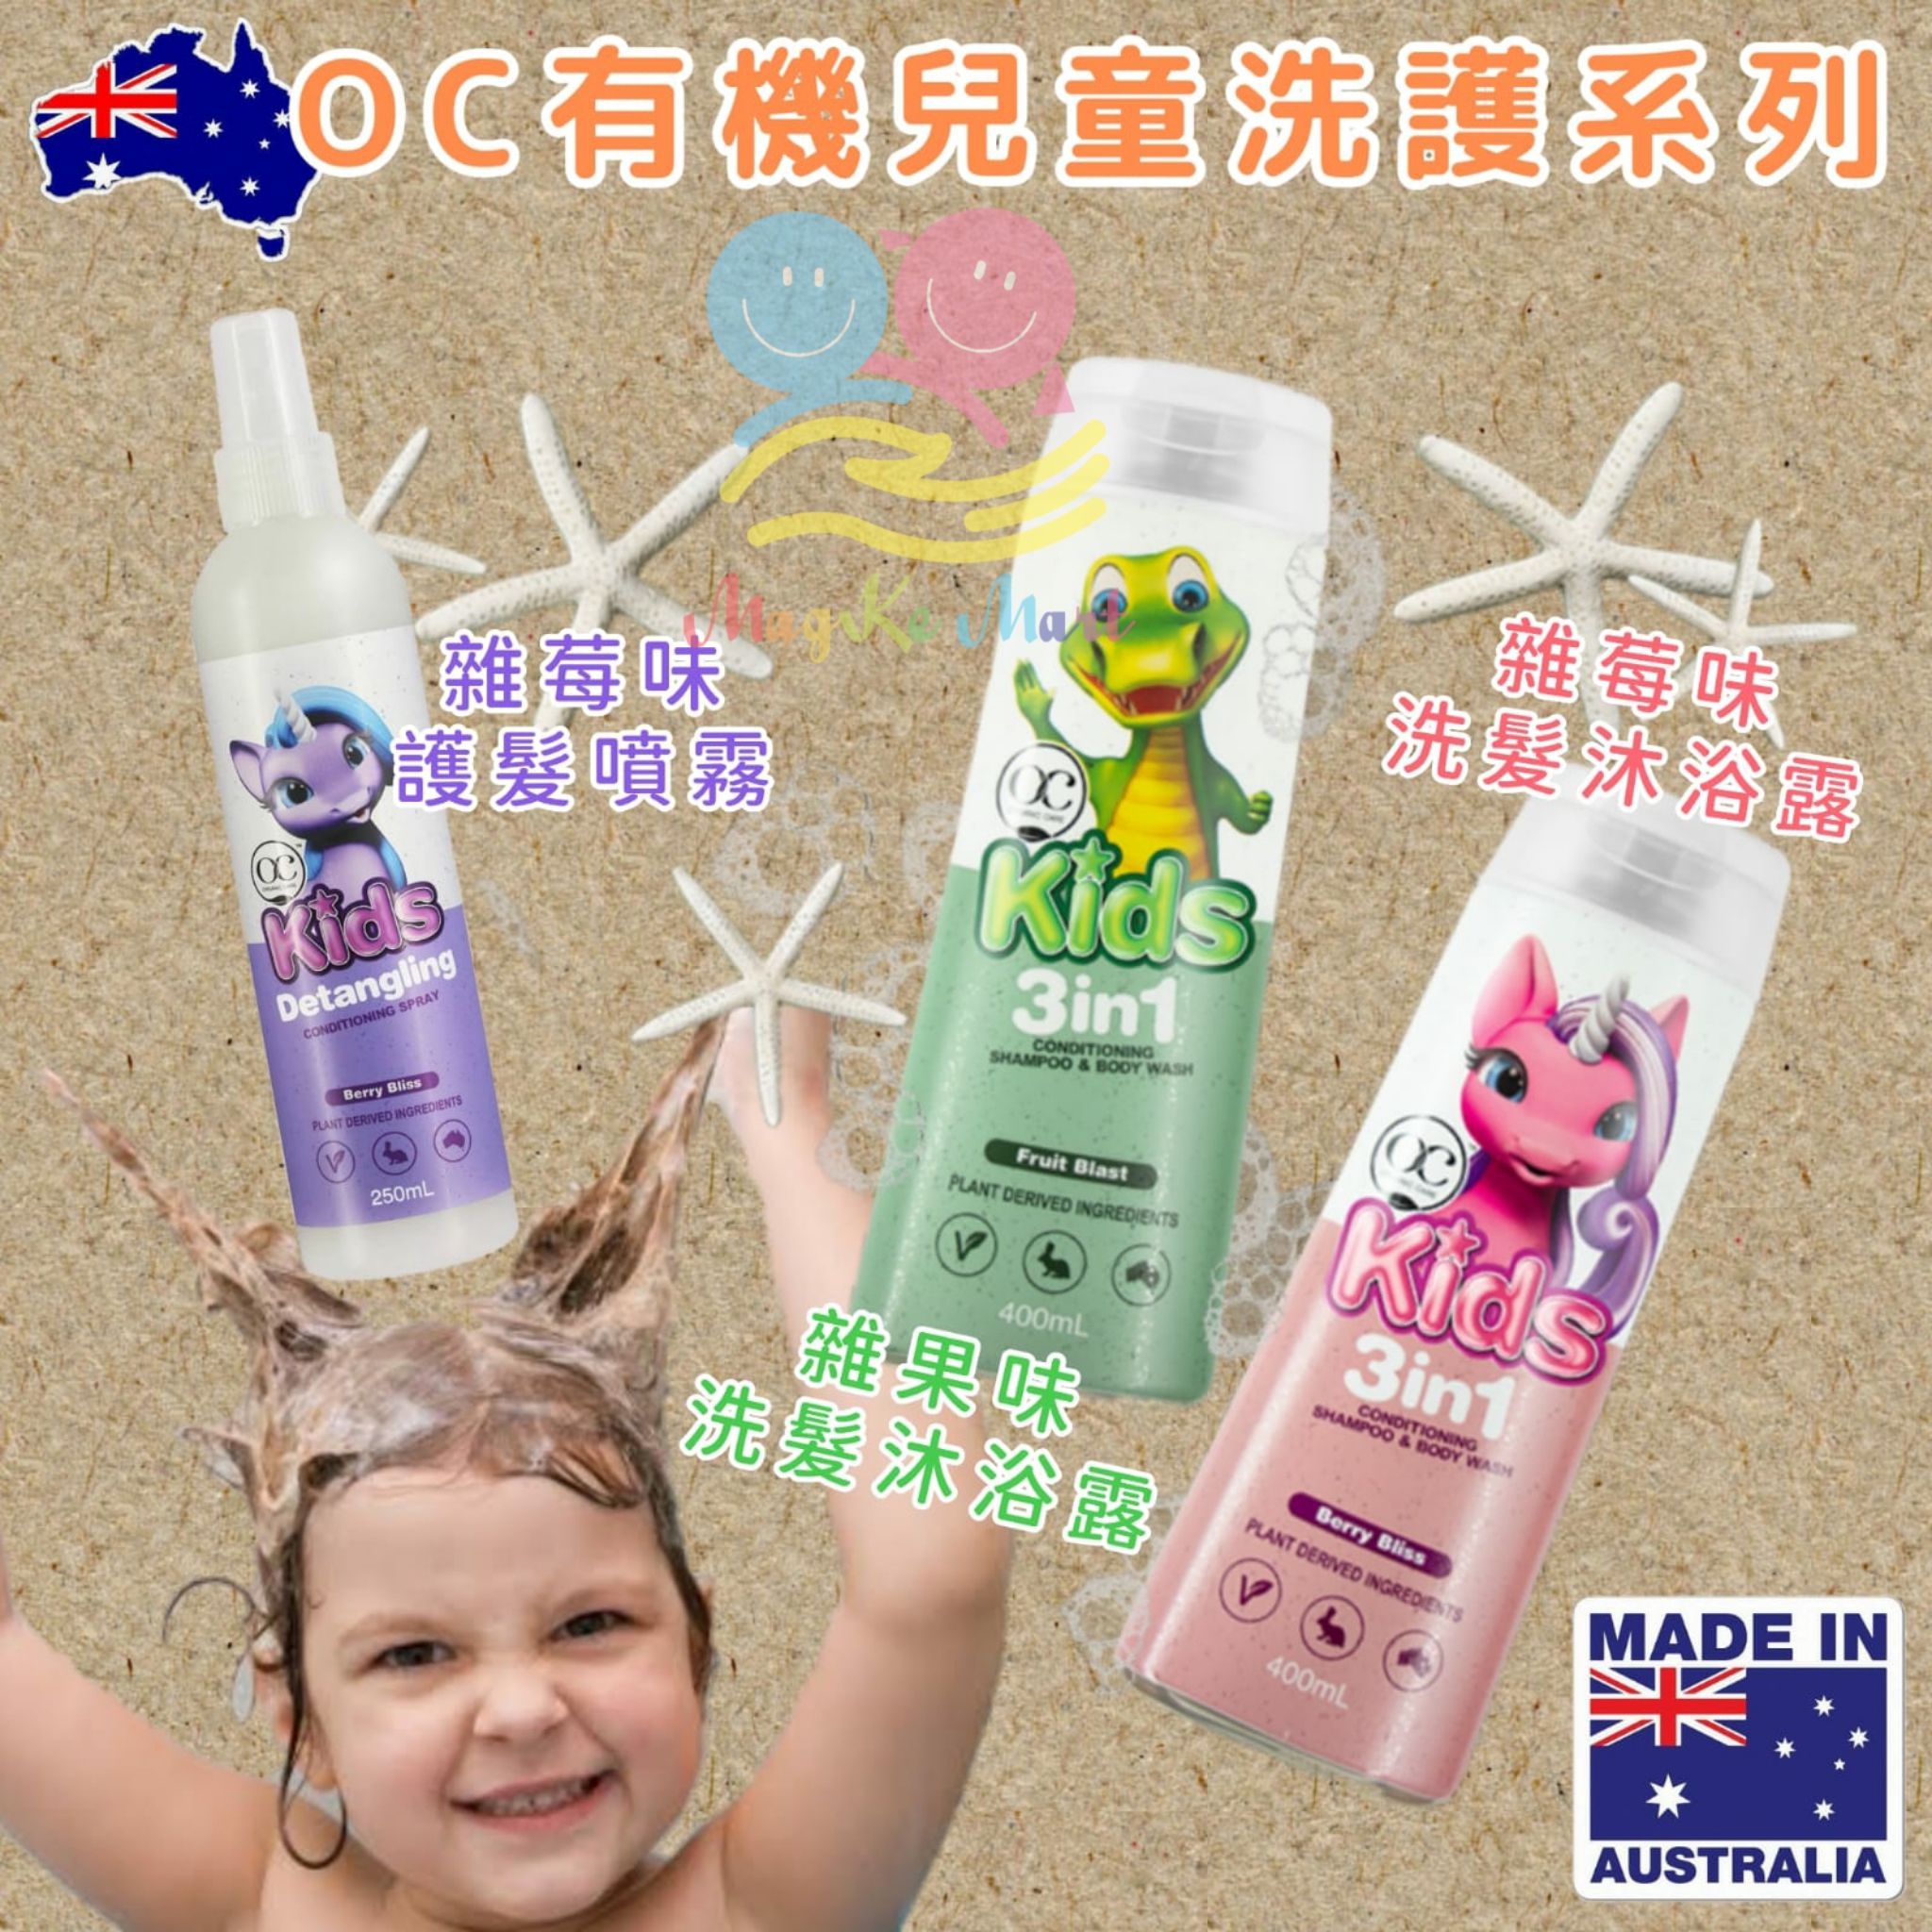 澳洲 OC 兒童專用有機洗護系列 (C) 紫色護髮噴霧(雜莓香味) 250ml